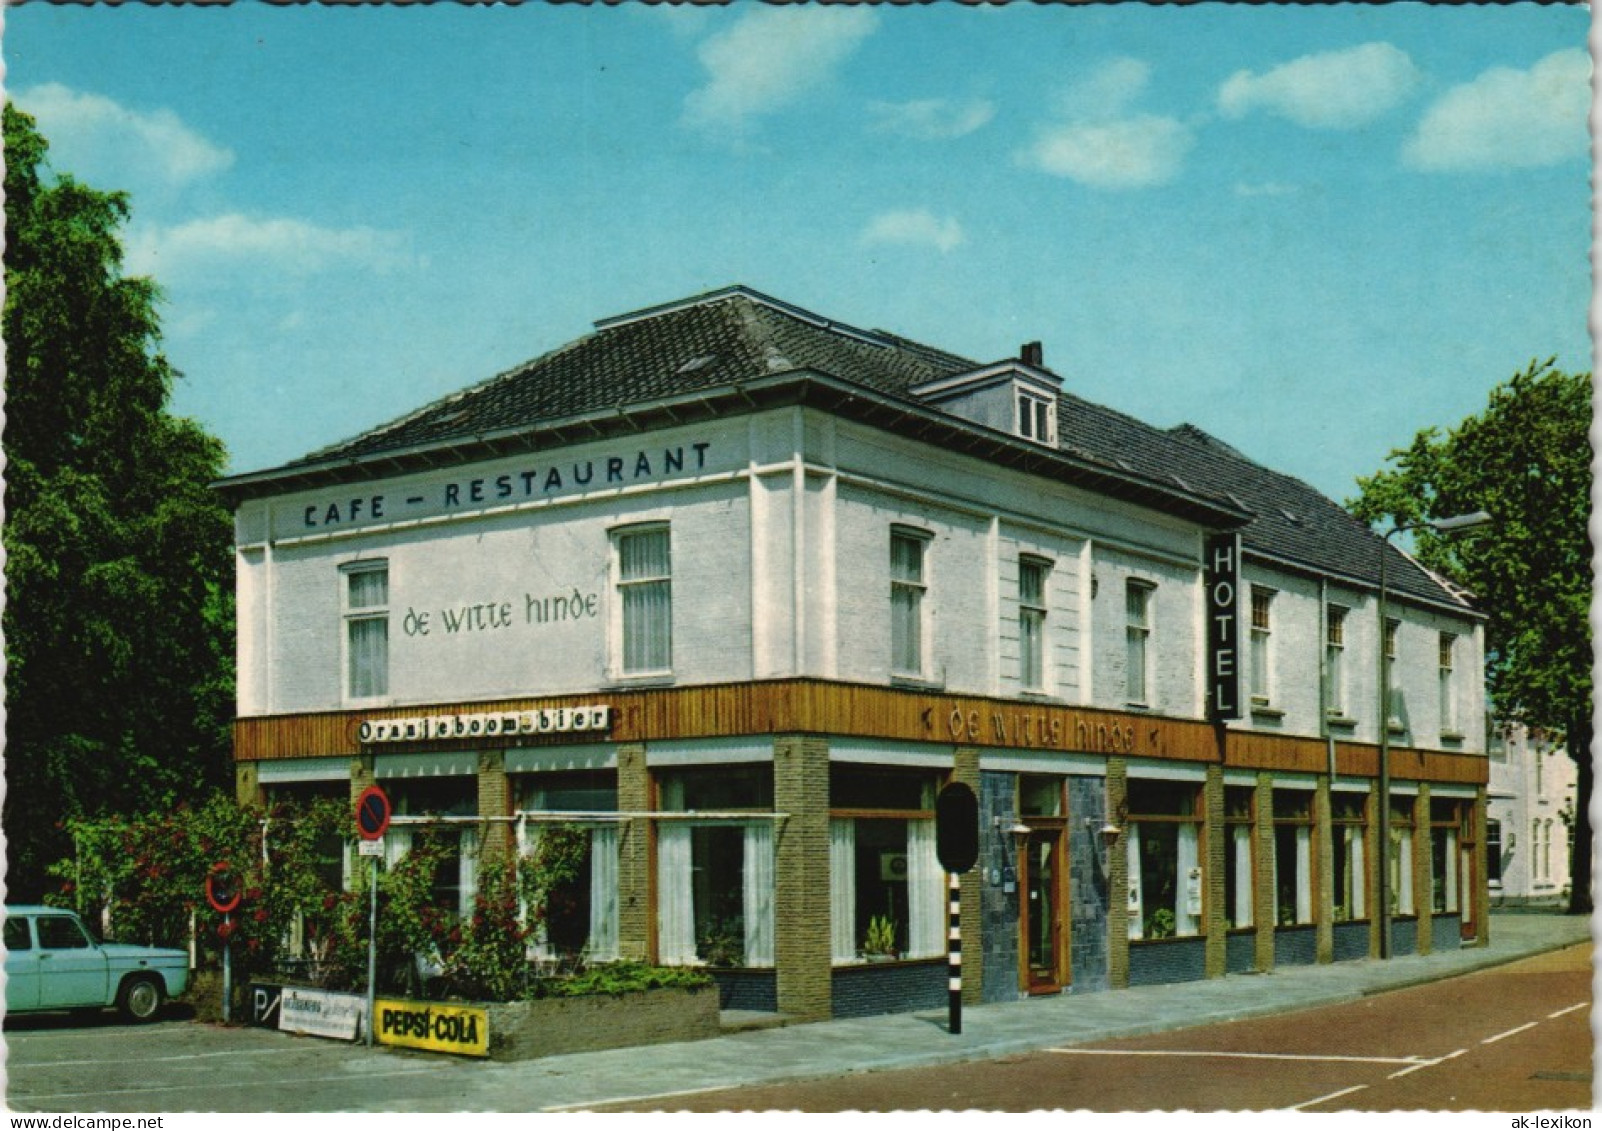 Ede (Gelderland) HOTEL-CAFE-RESTAURANT "DE WITTE HINDE" EDE 1970 - Other & Unclassified